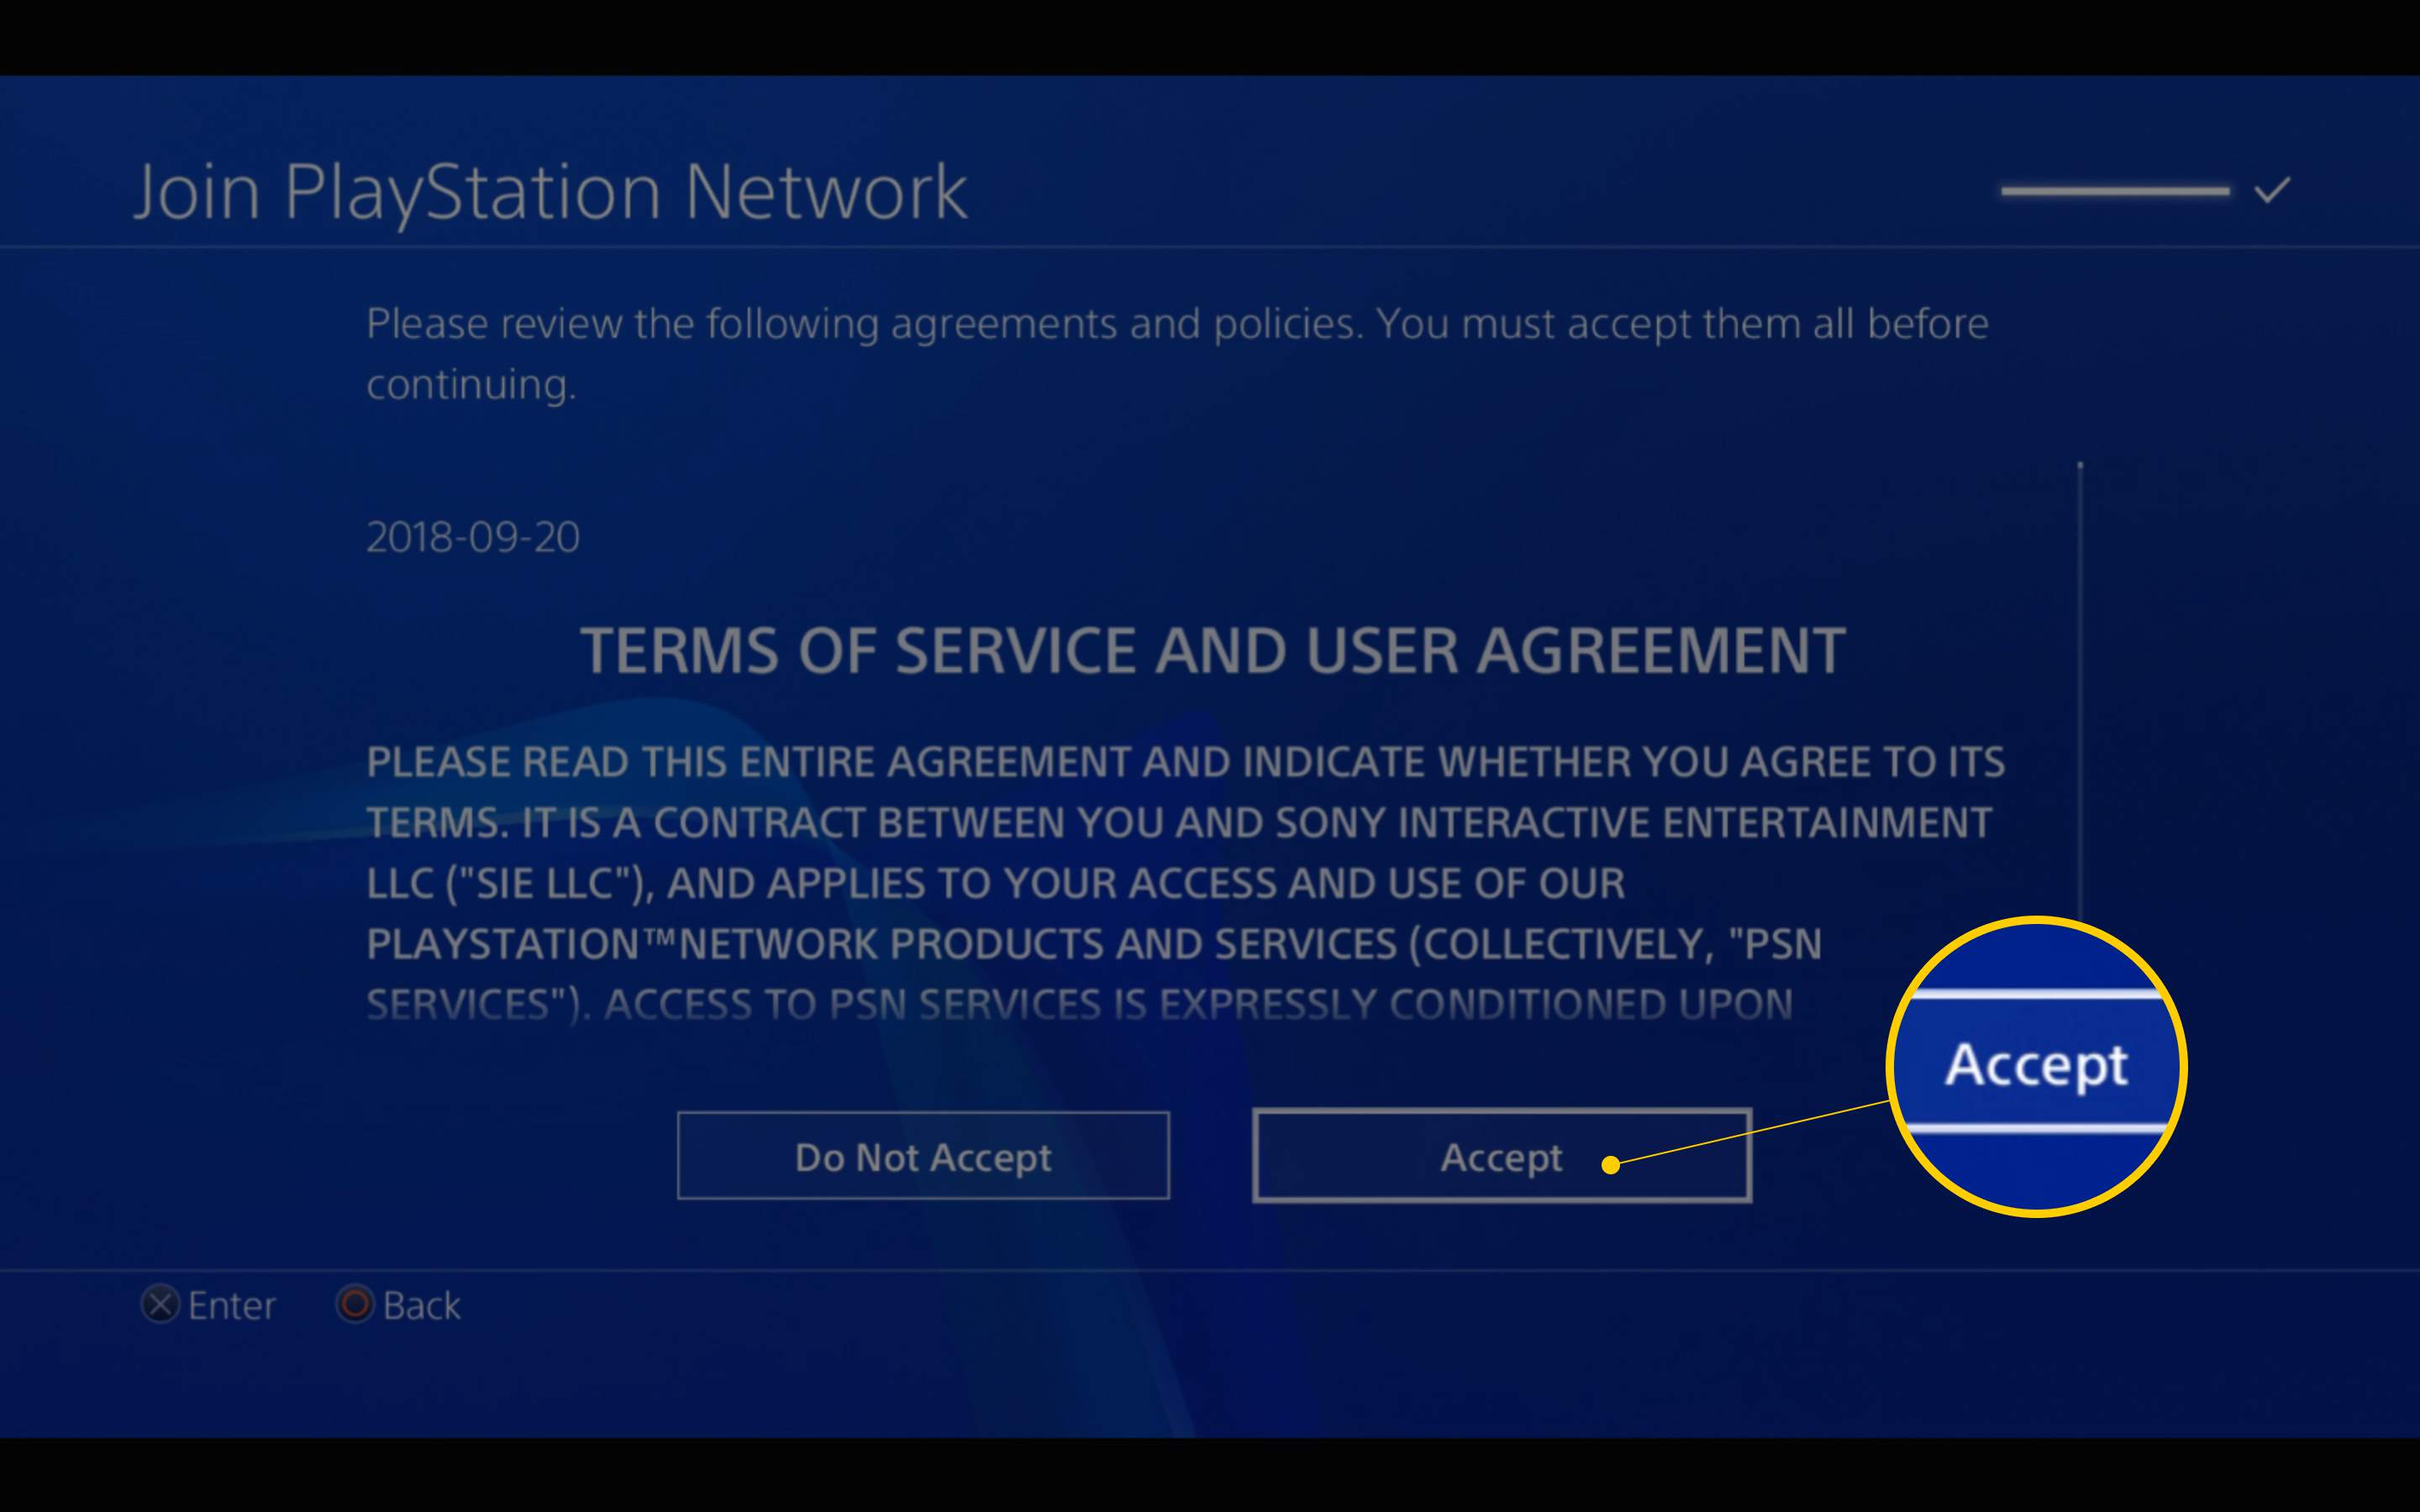 Chcete-li se připojit k síti PlayStation Network na PS4, klikněte na stránce Podmínky služby a Uživatelské smlouvy na tlačítko Přijmout